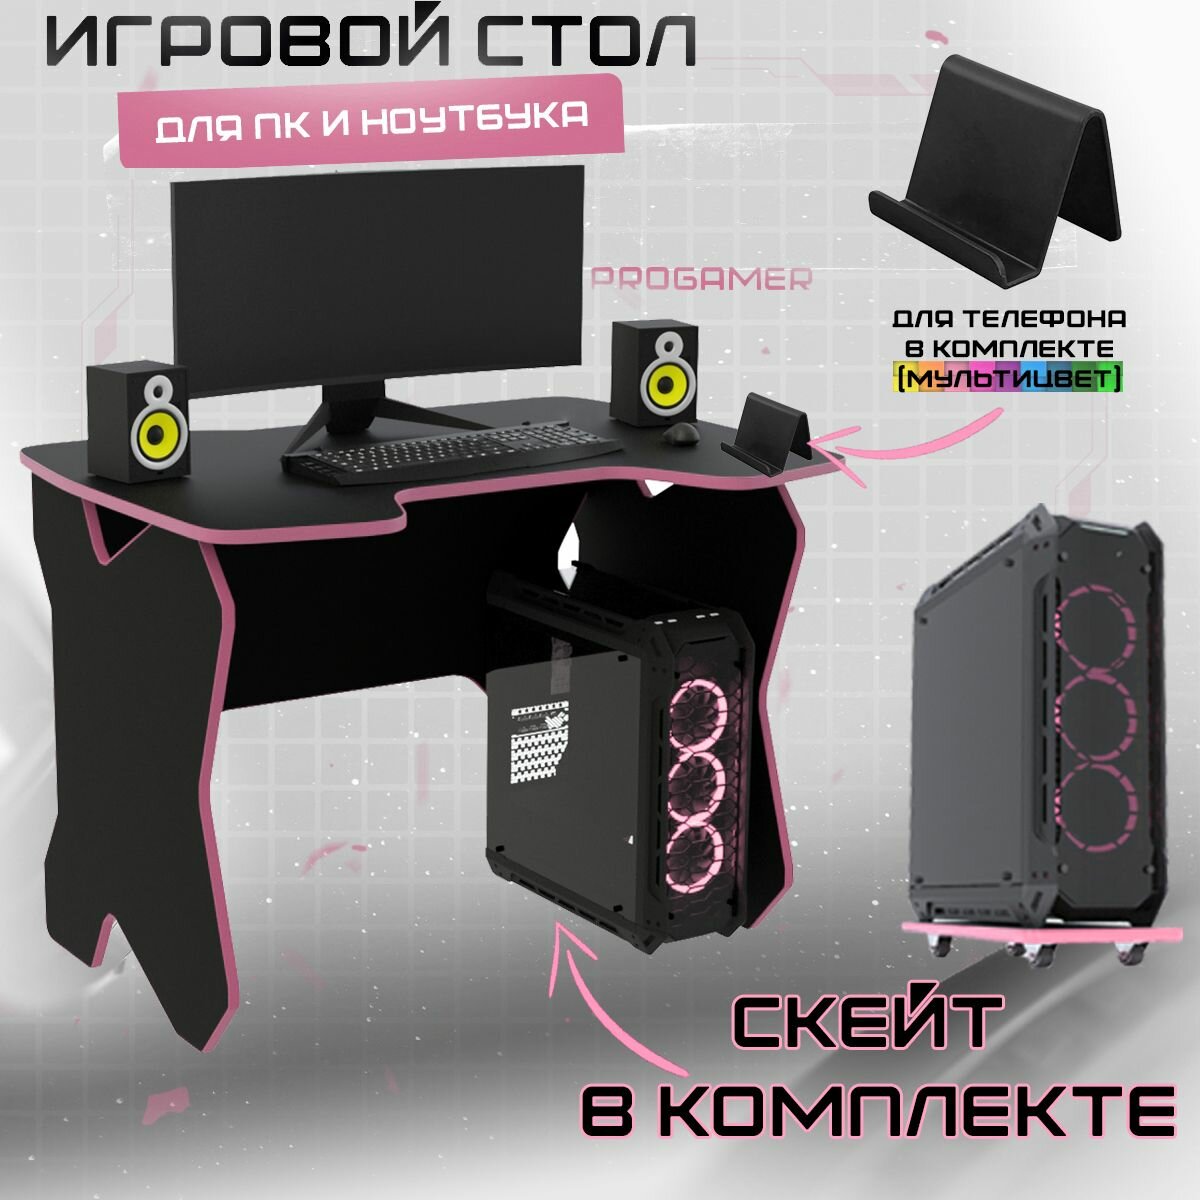 Стол компьютерный игровой геймерский Sky черный розовый 1100*720мм